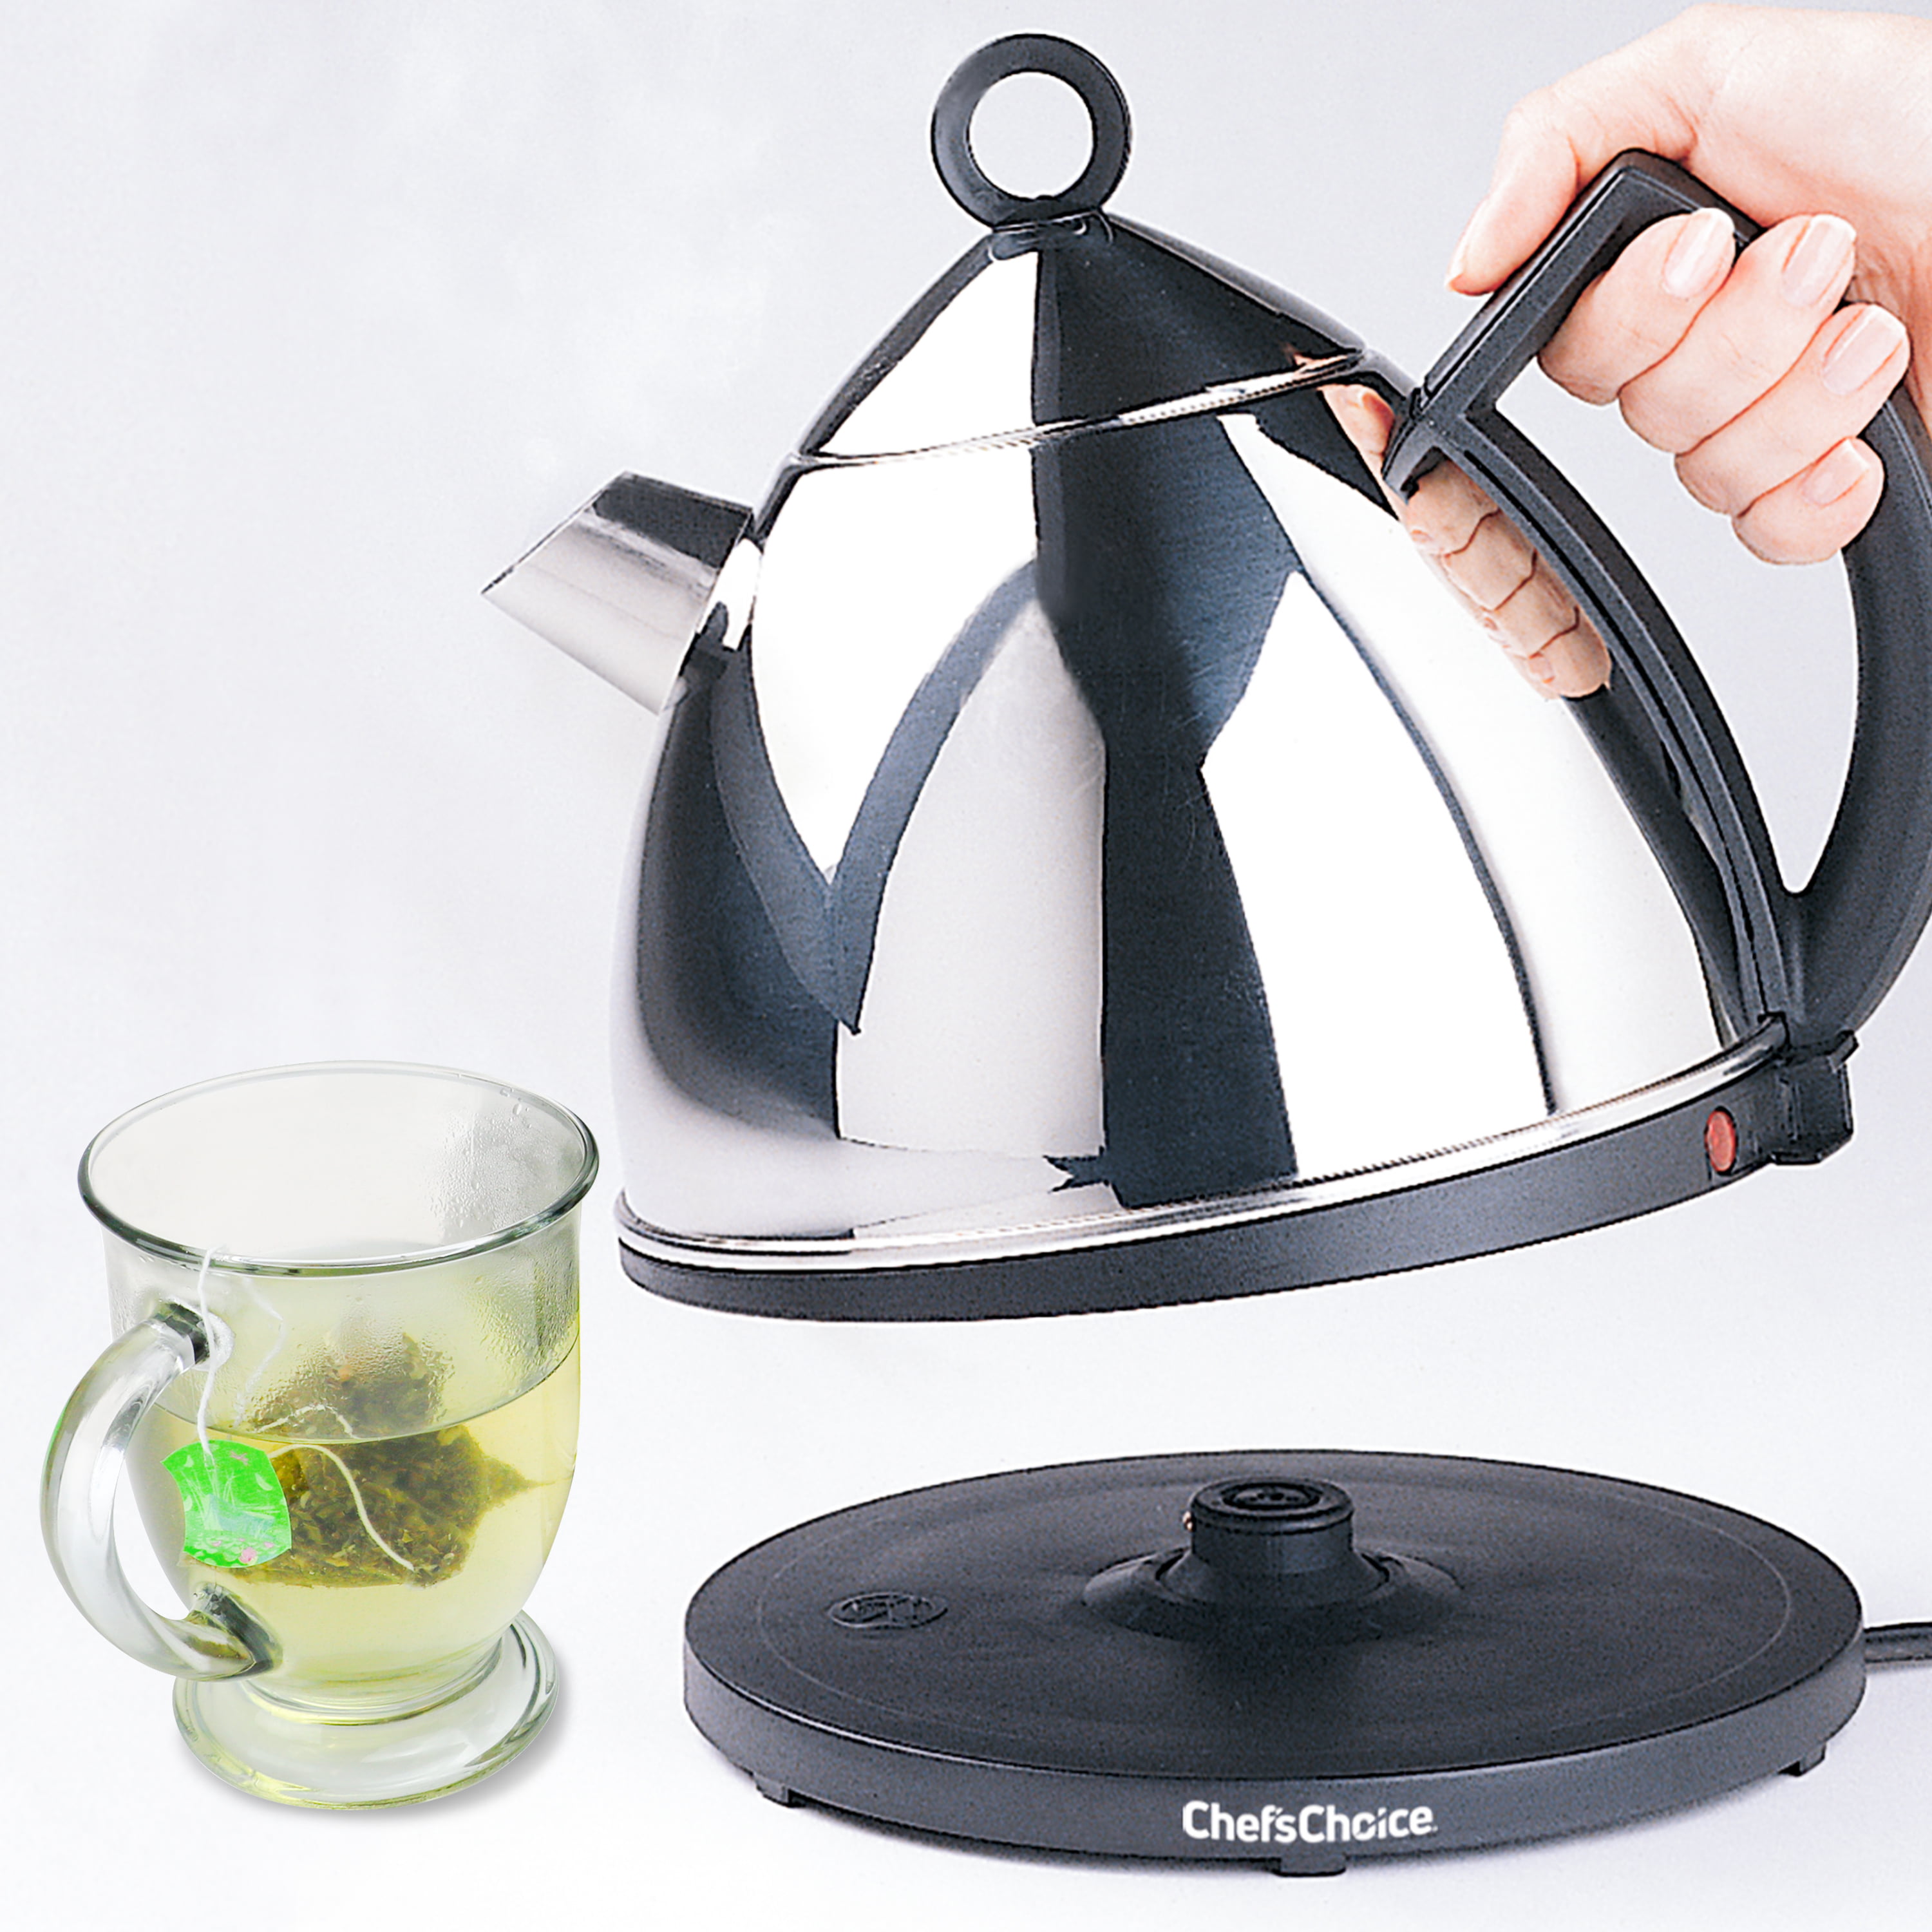 TeaSmart® Electric Turkish Tea Kettle